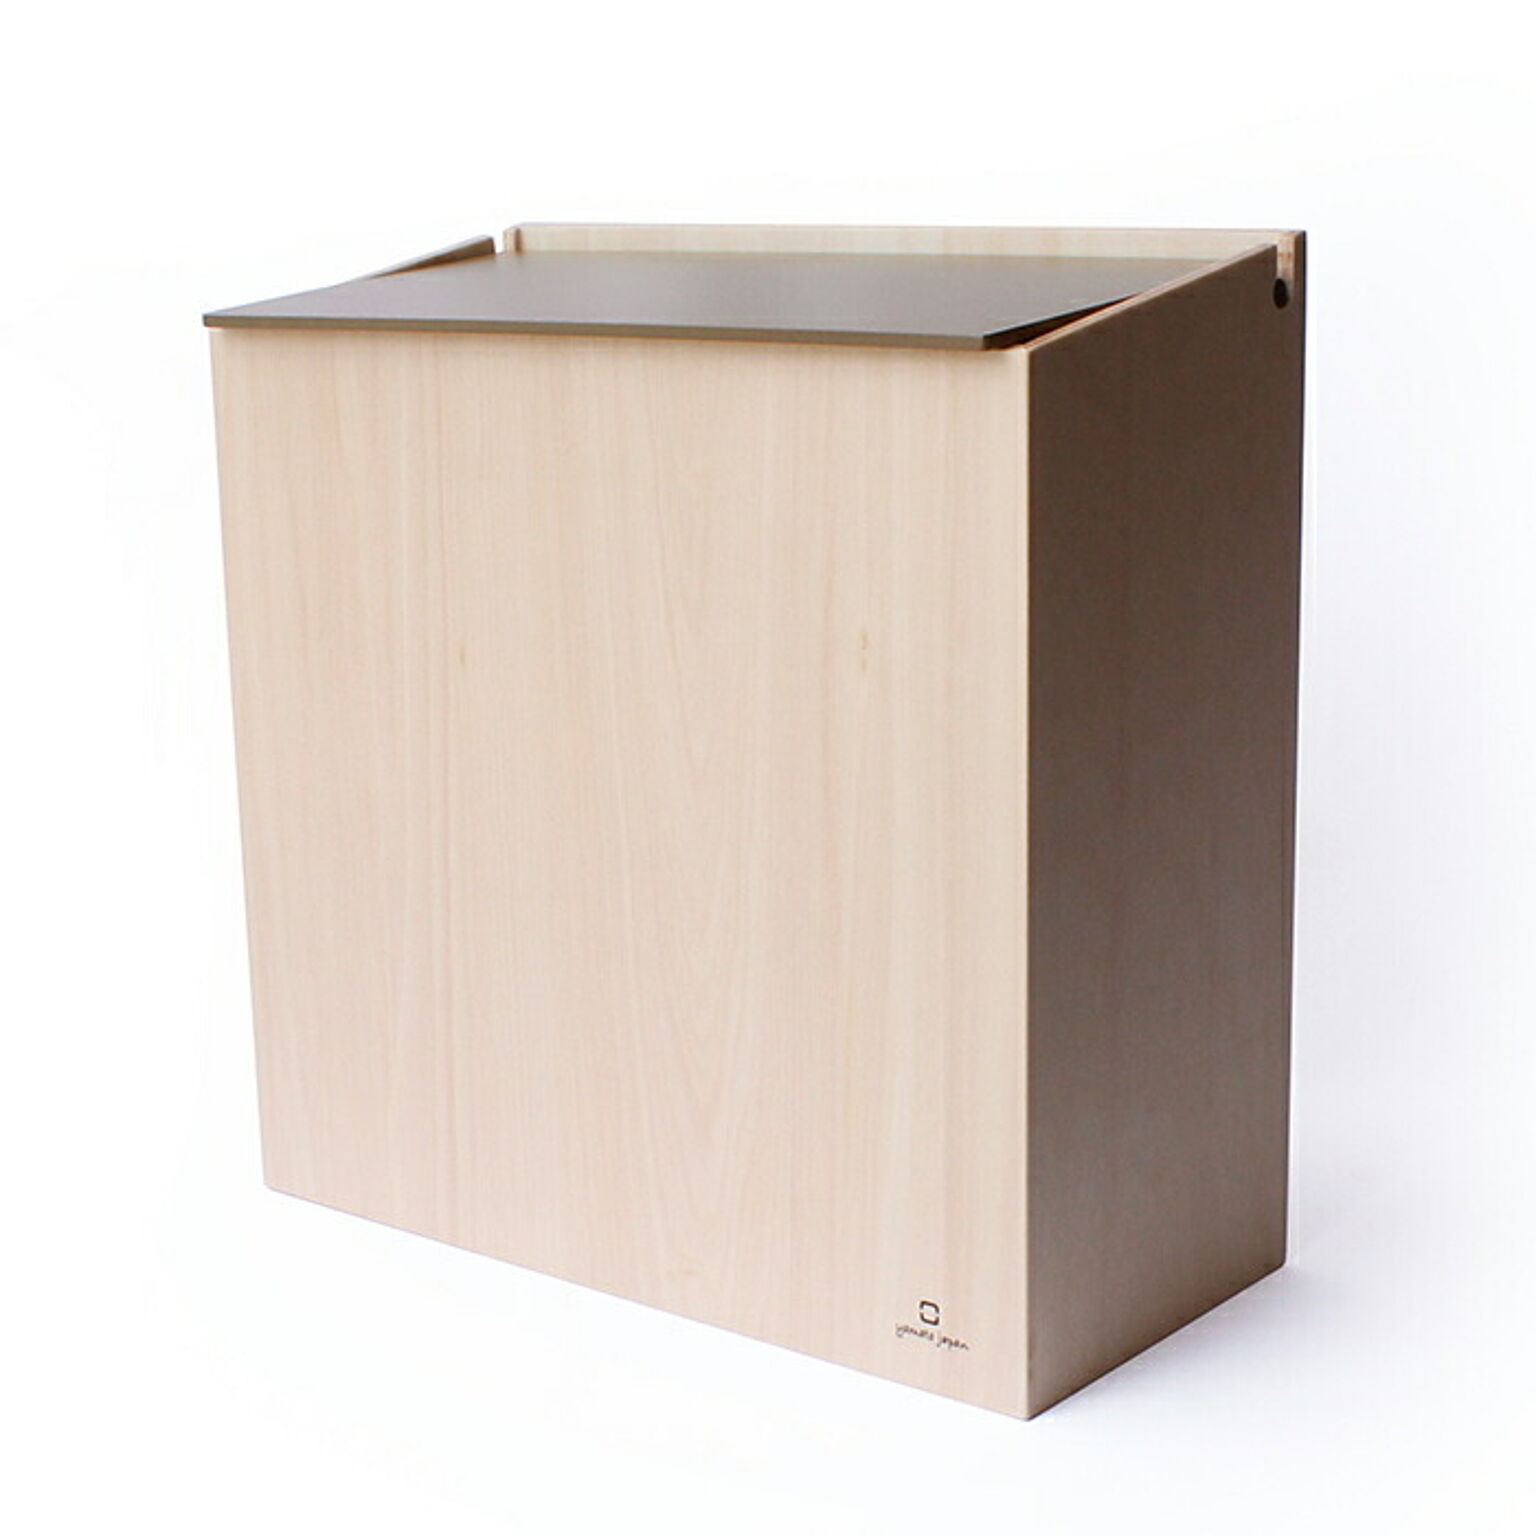 ゴミ箱 おしゃれ ダストボックス 北欧 シンプル かわいい スリム ごみ箱 日本製 SLIM DUST 木製 職人の手作り リビング ギフト ヤマト工芸